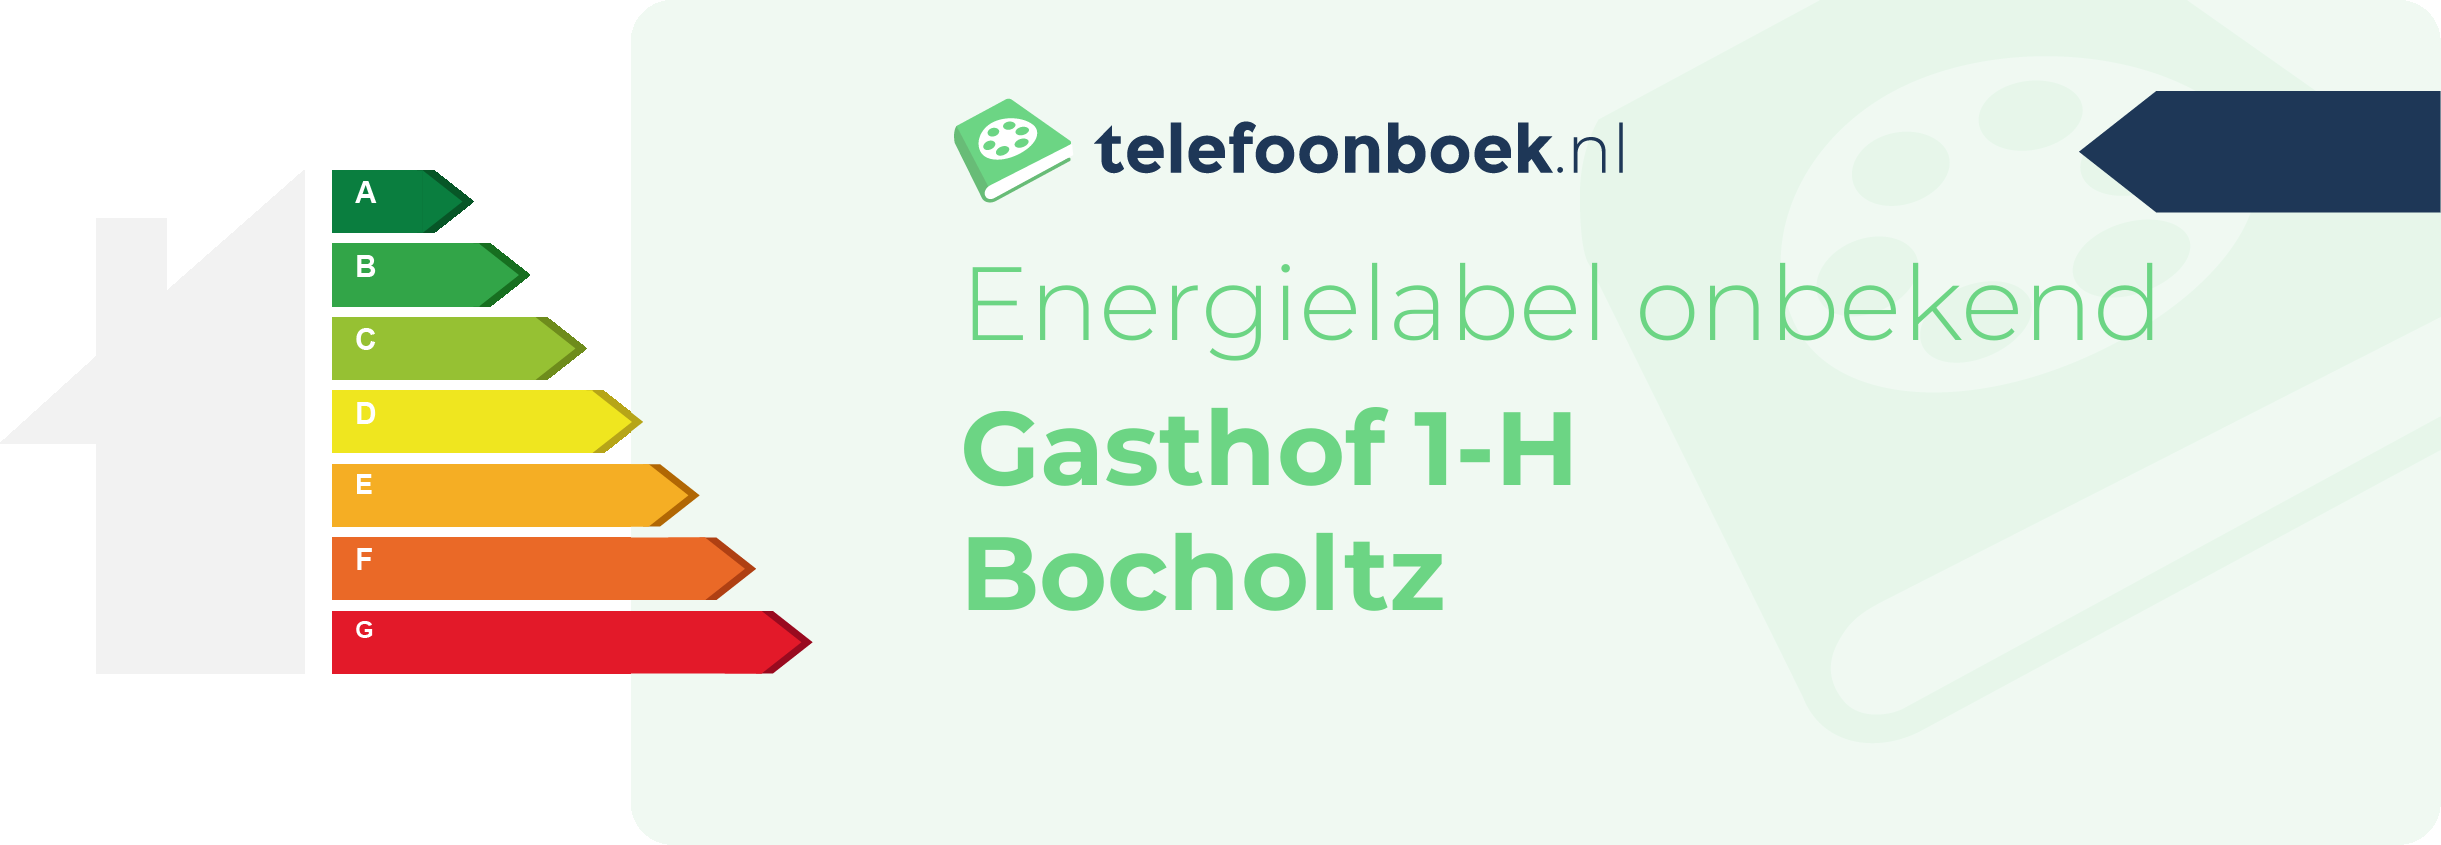 Energielabel Gasthof 1-H Bocholtz